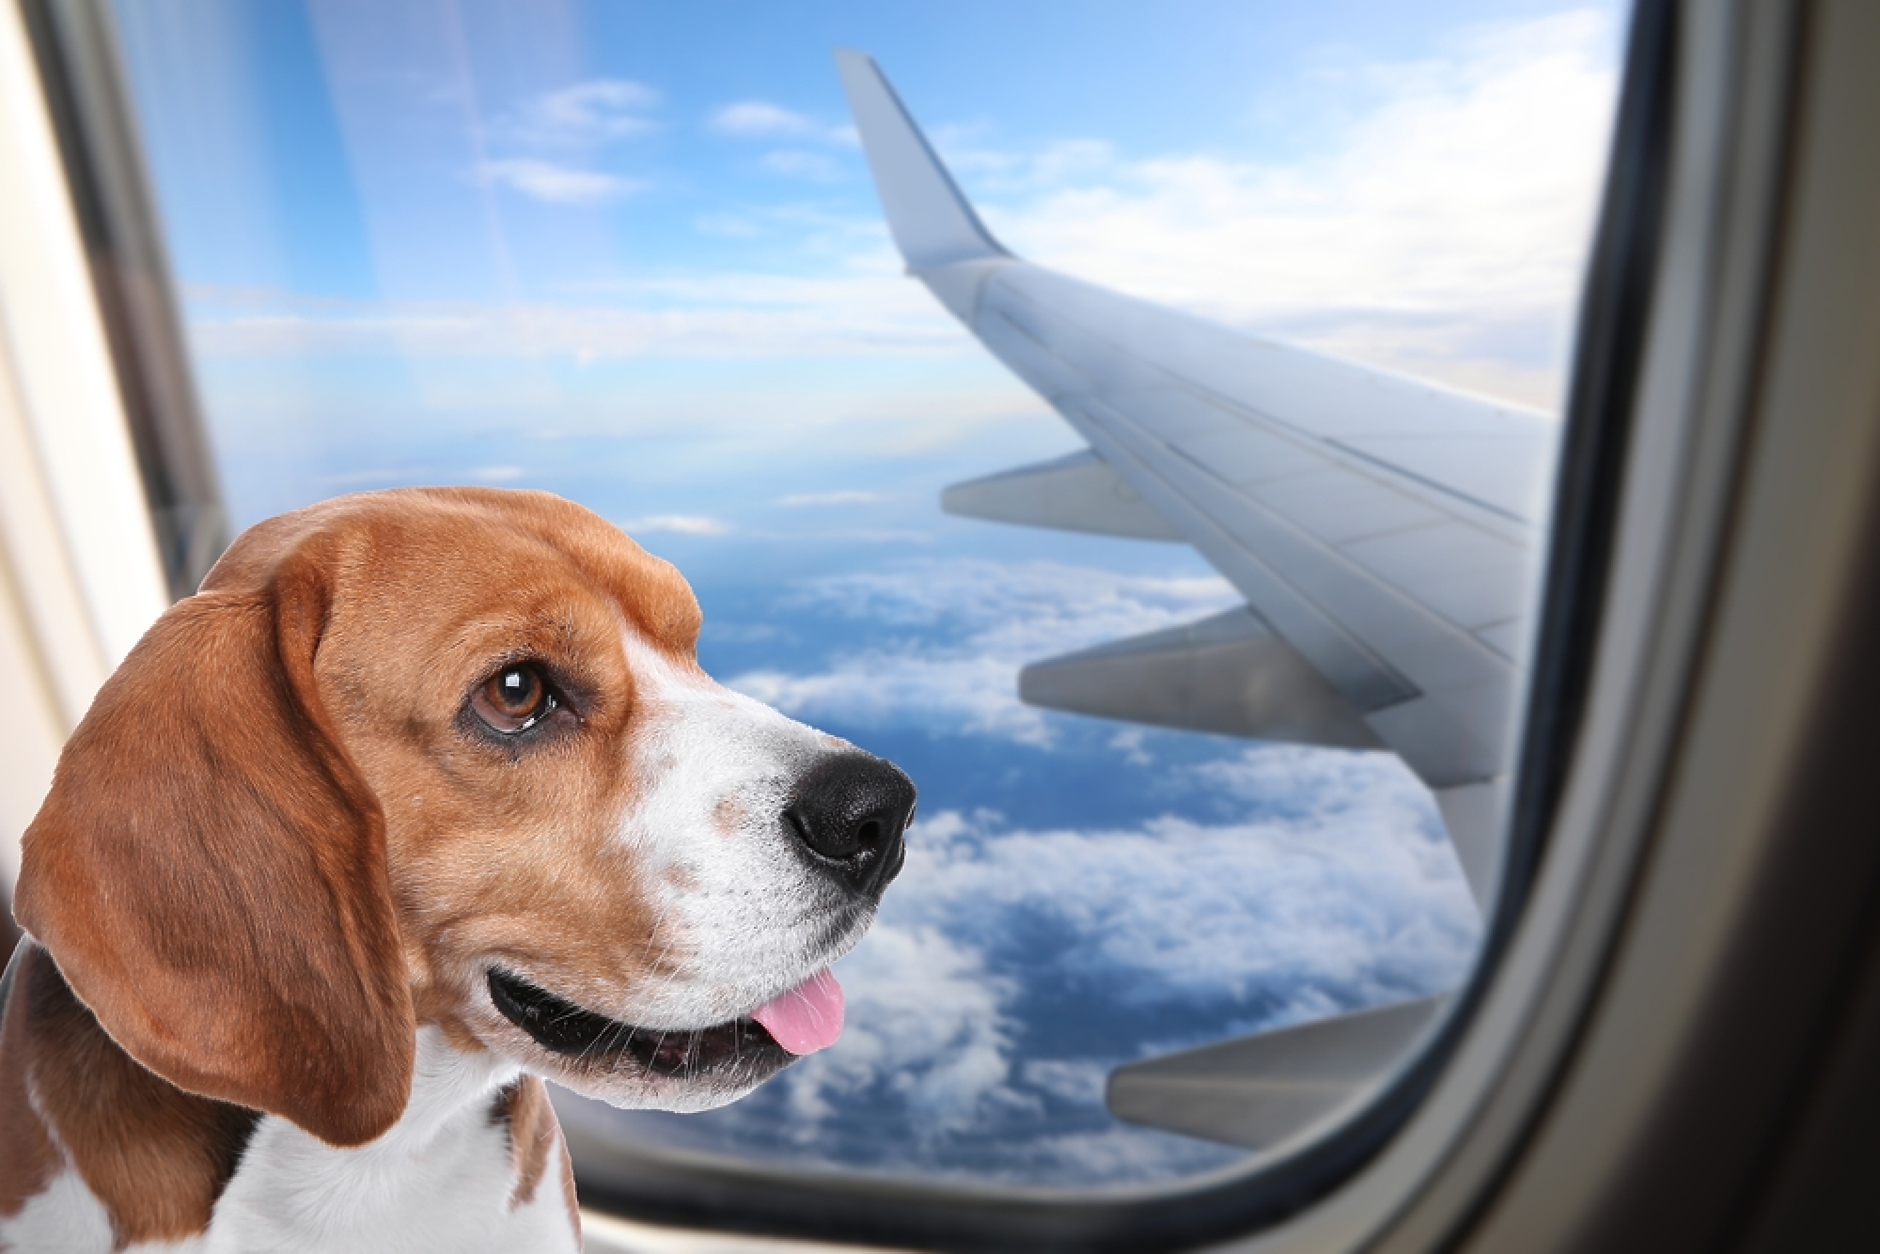 Първата авиокомпания, създадена да лети с кучета